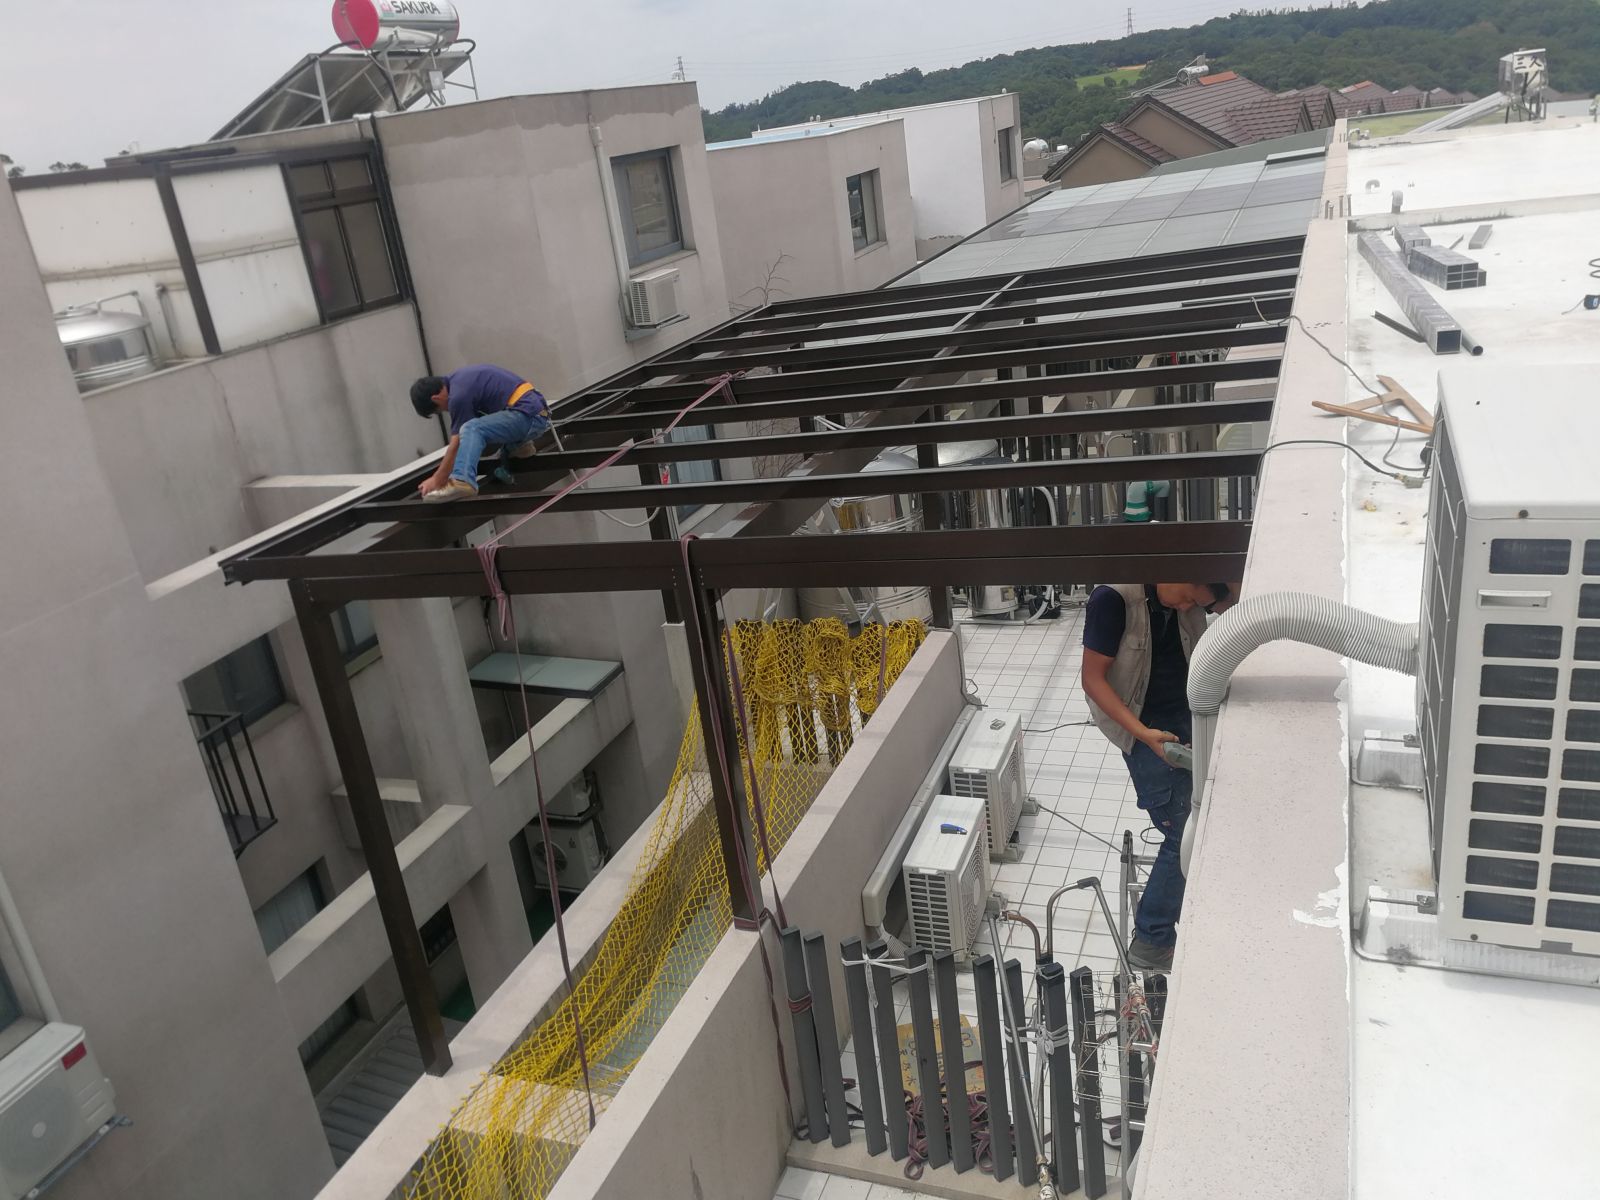 屋頂材質採用雙材質鋁包鋼,施工一律採用完整性雙架構之做法